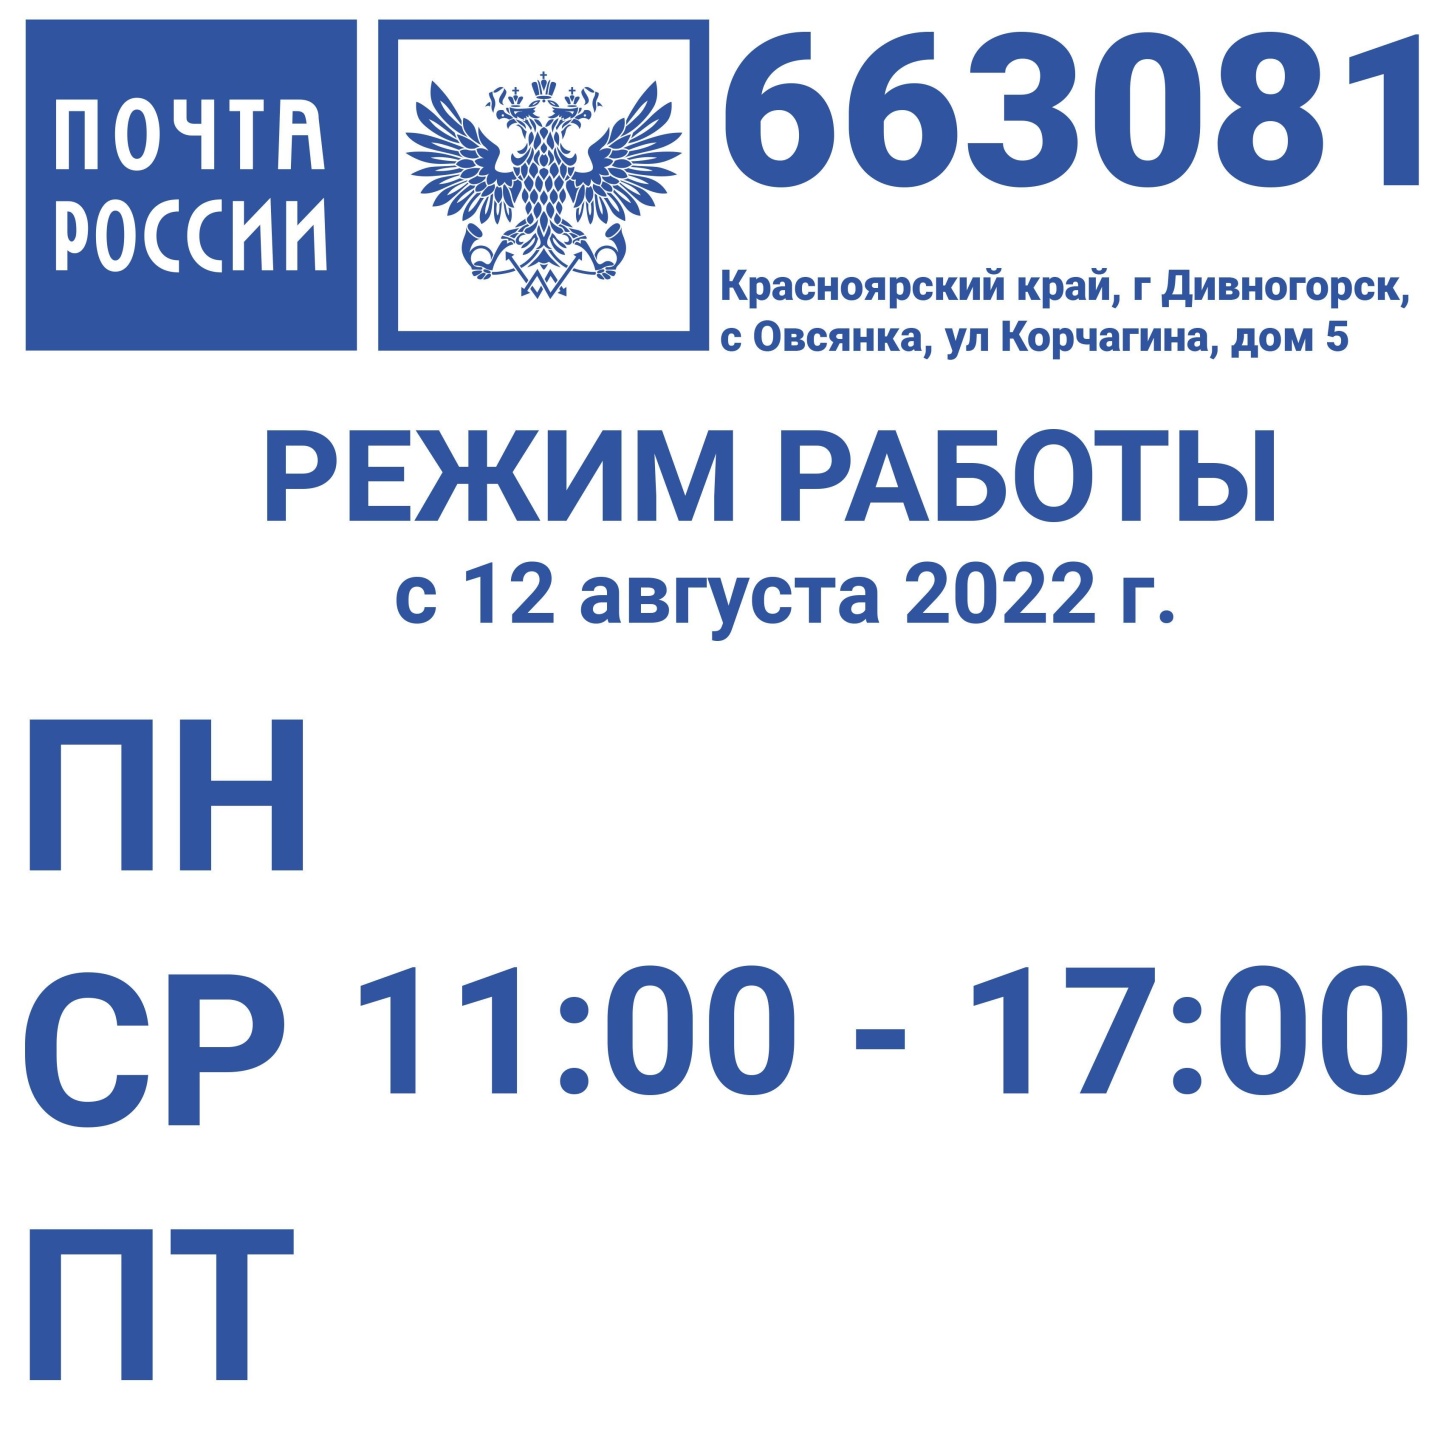 Телеграмма почта россии телефон фото 47